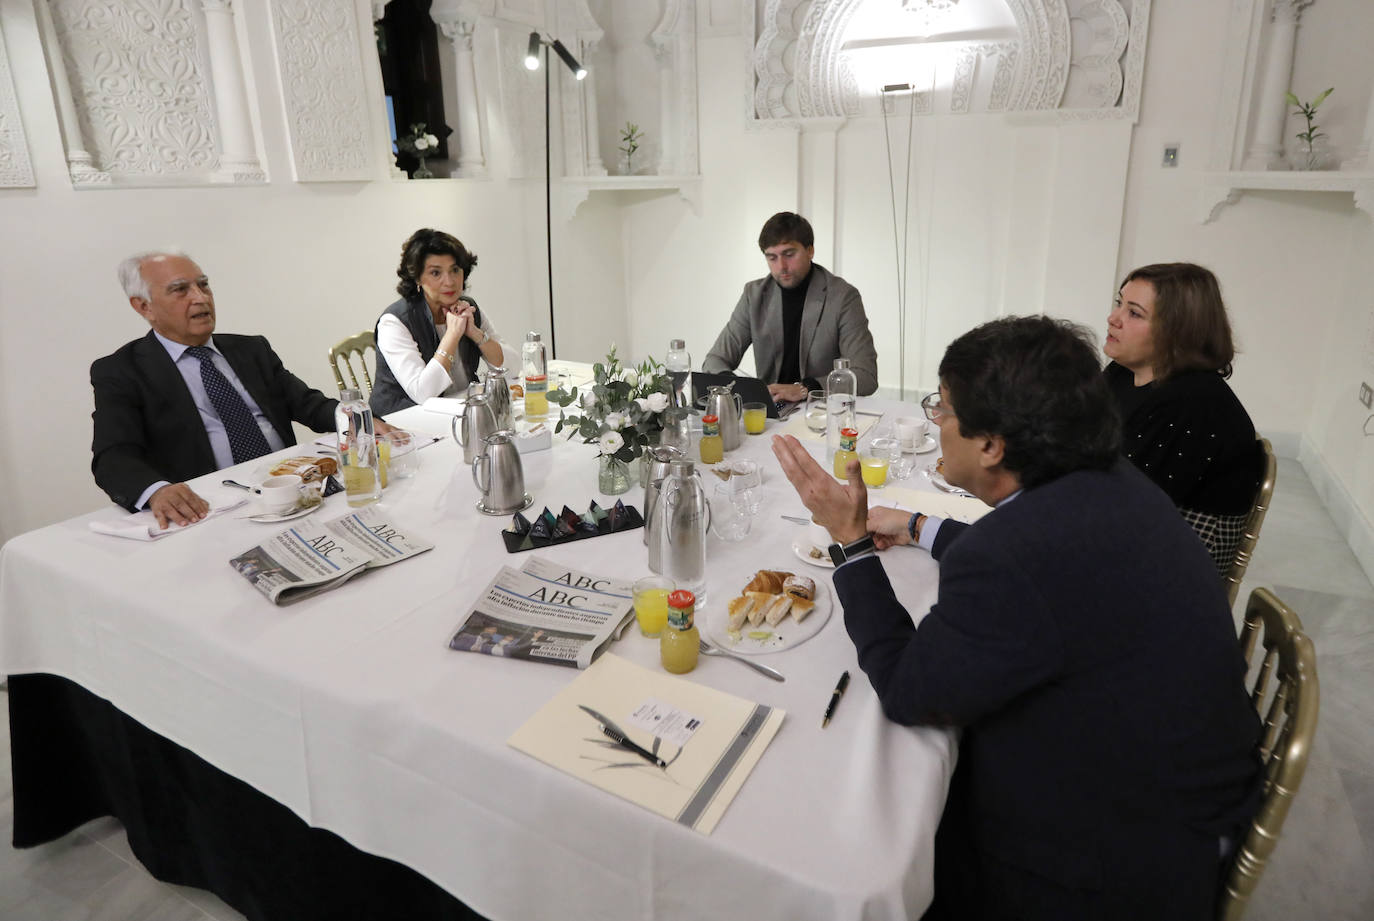 La Mesa de Redacción de ABC Córdoba con los colegios profesionales, en imágenes